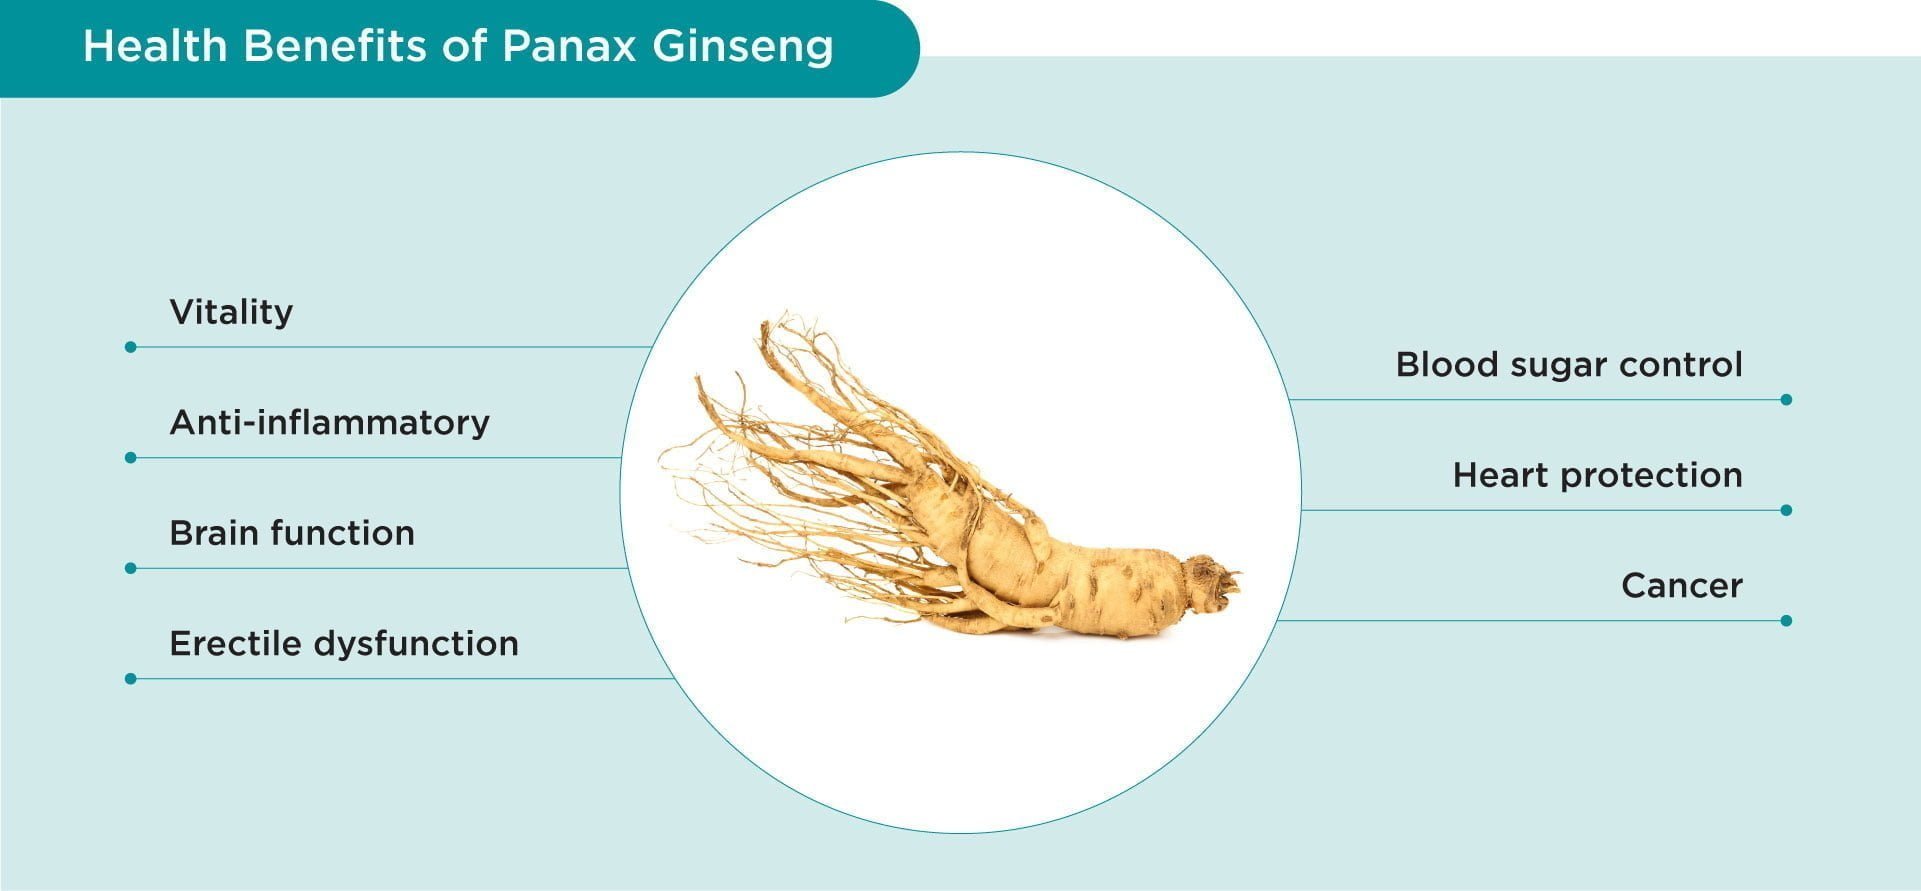 Benefits of Panax ginseng